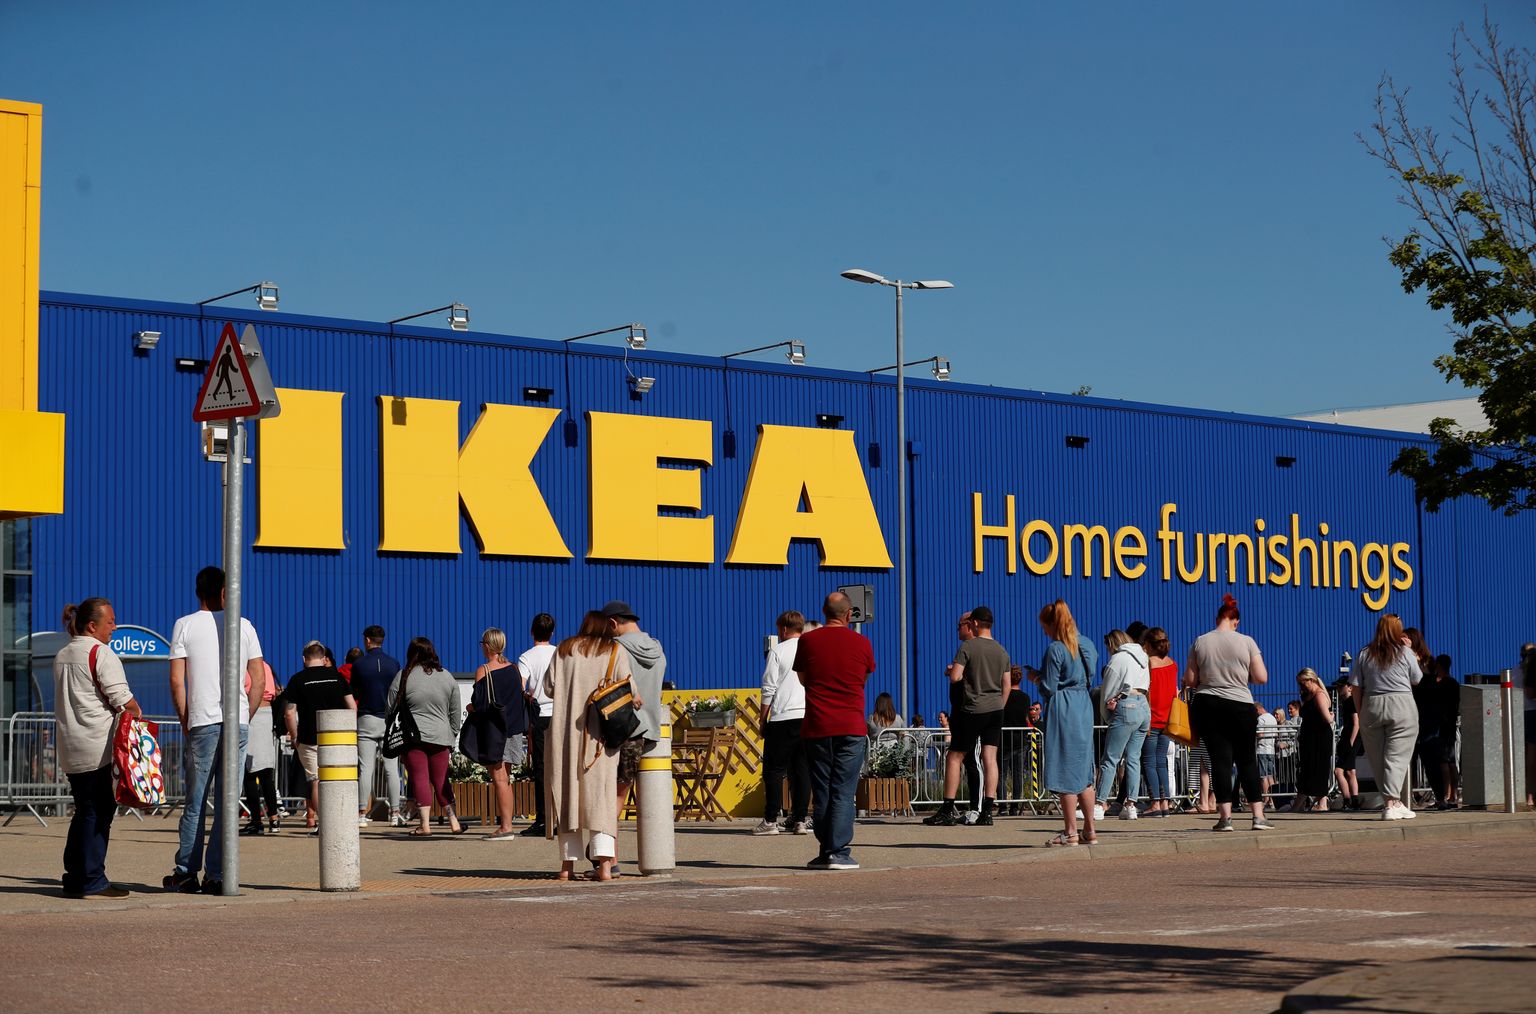 Efterträda-nimeline kollektsioon erineb kui öö ja päev IKEA senisest toodangust.